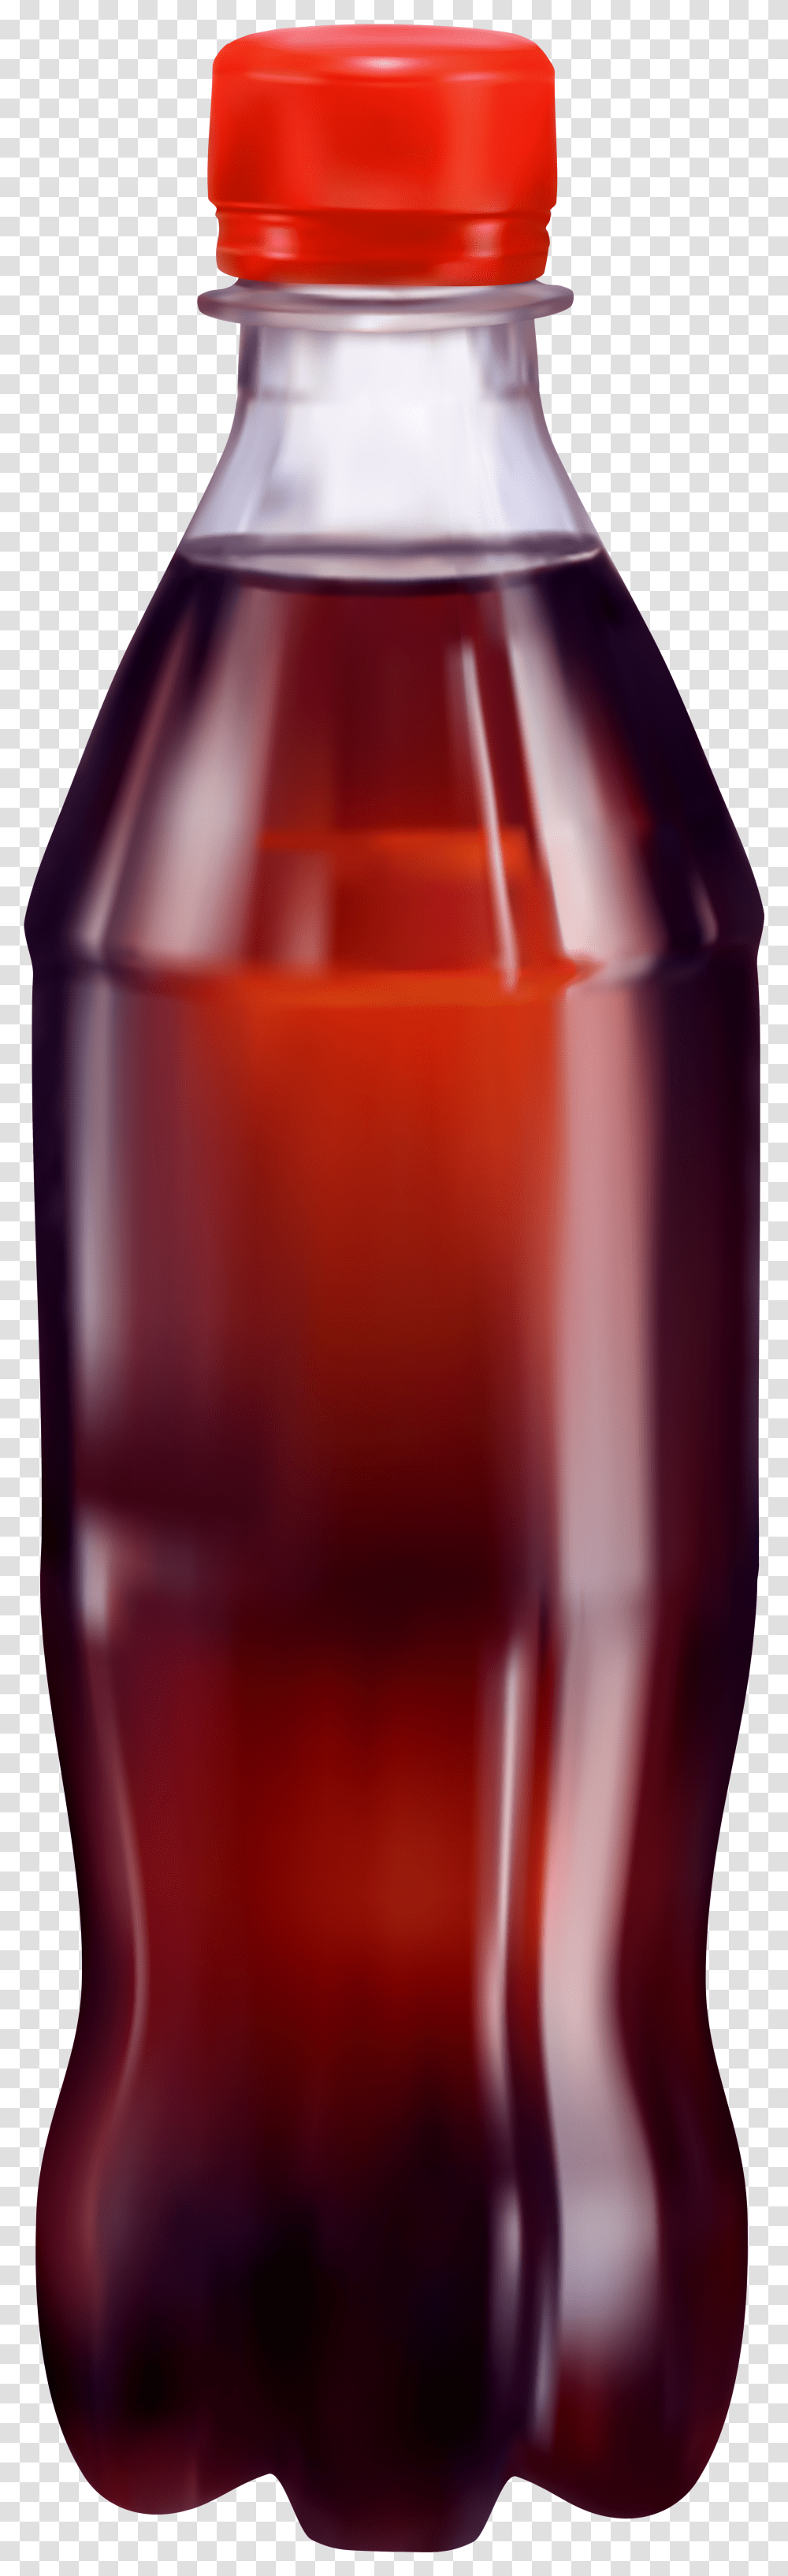 Coca Cola Bottle Clip Art Soda Bottle Hd Transparent Png